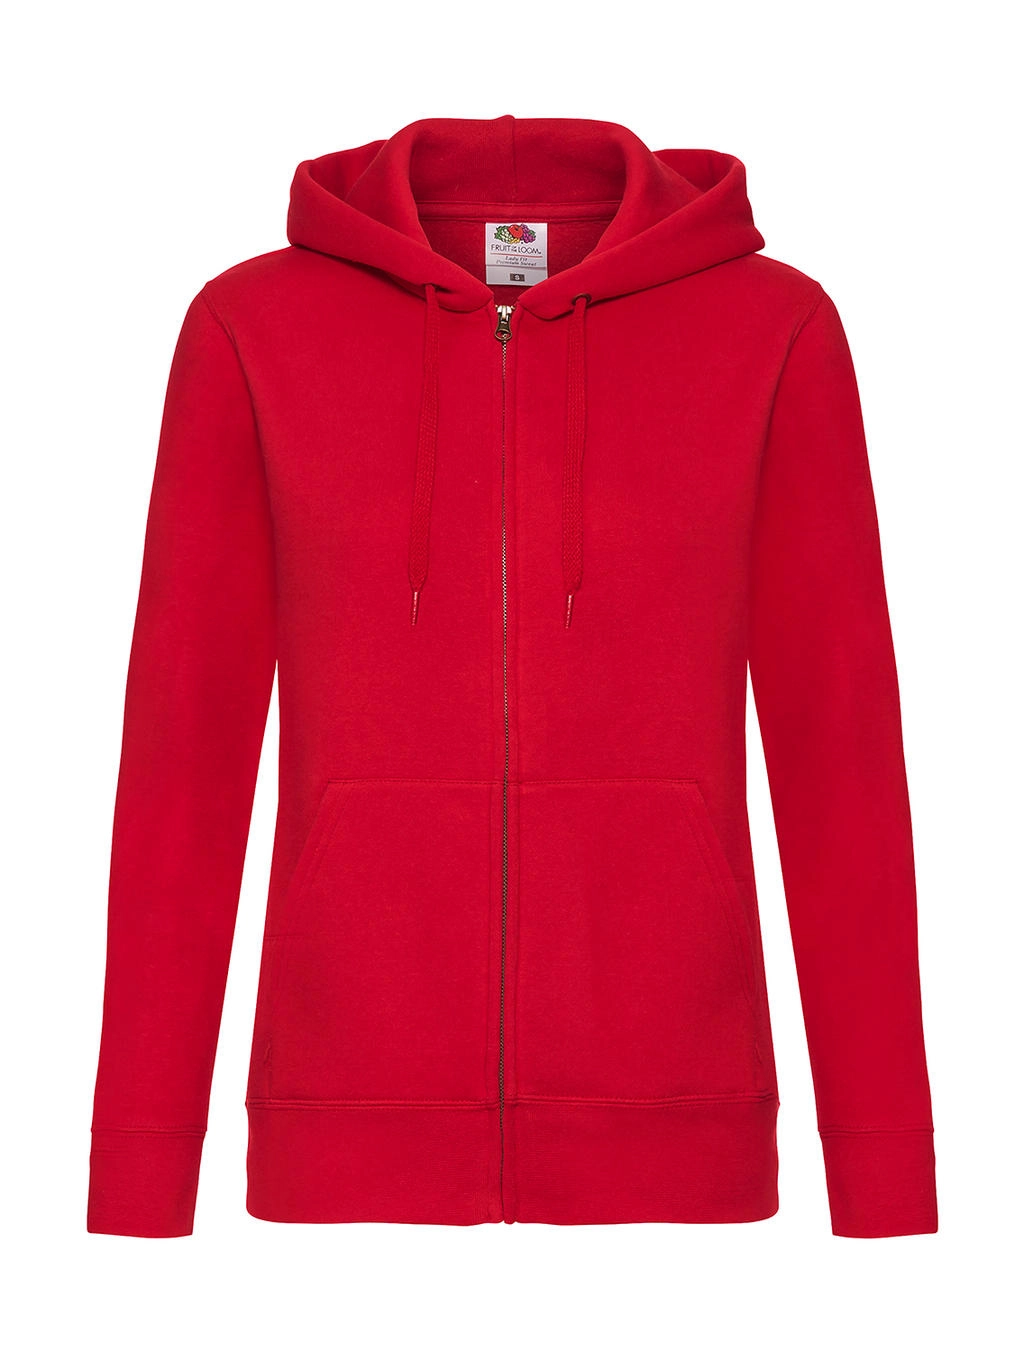 Premium Hooded Sweat Jacket Lady-Fit zum Besticken und Bedrucken in der Farbe Red mit Ihren Logo, Schriftzug oder Motiv.